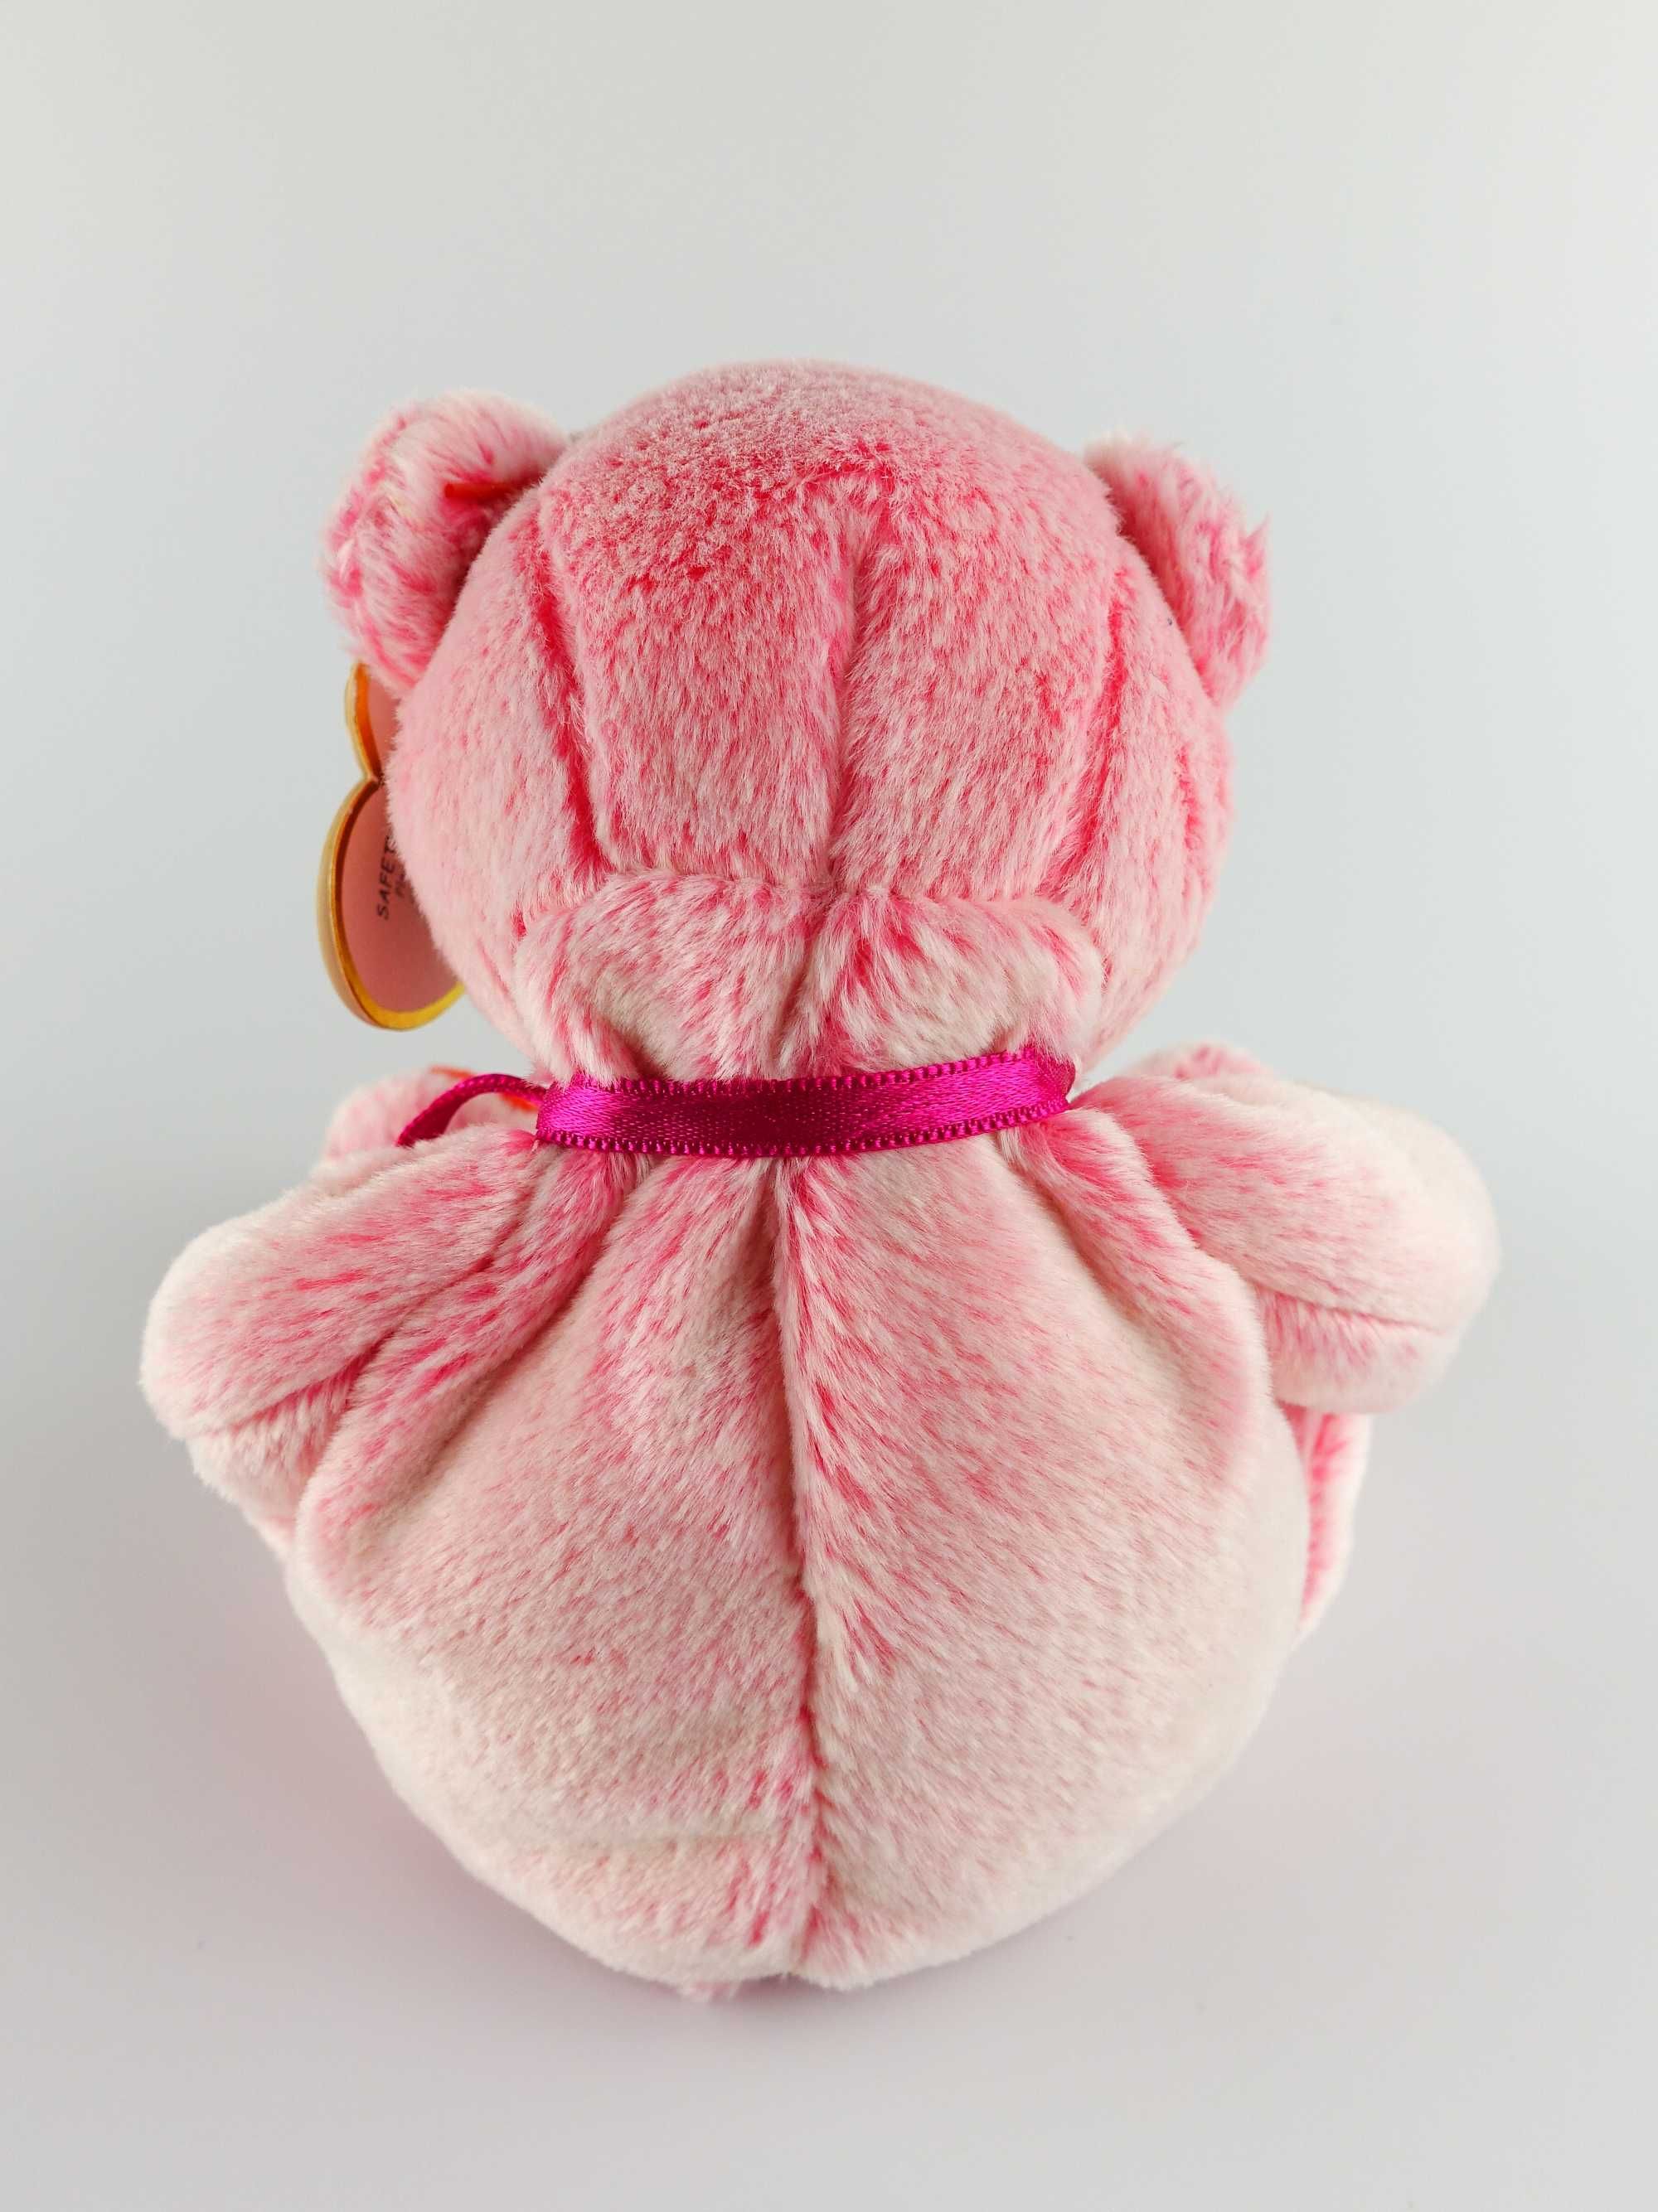 Рожевий ведмедик Romance Bear, серія Beanie Baby, від бренду TY, 2001